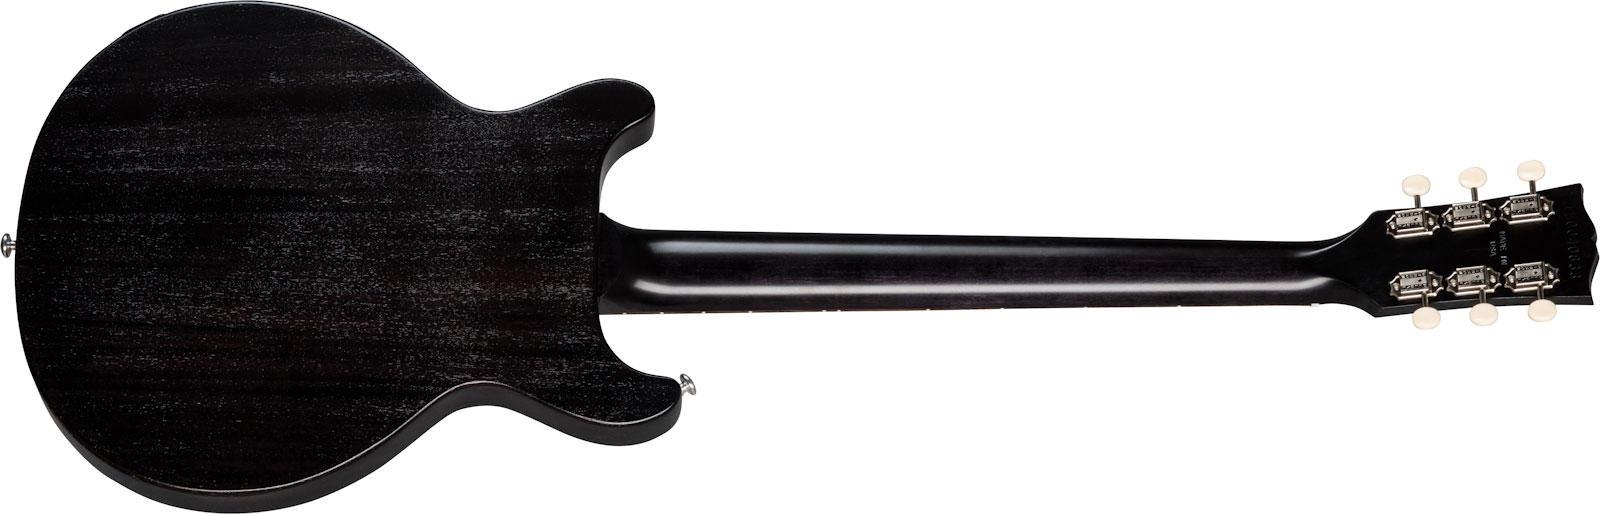 Gibson Les Paul Junior Tribute Dc Modern P90 - Worn Ebony - Guitare Électrique Double Cut - Variation 1